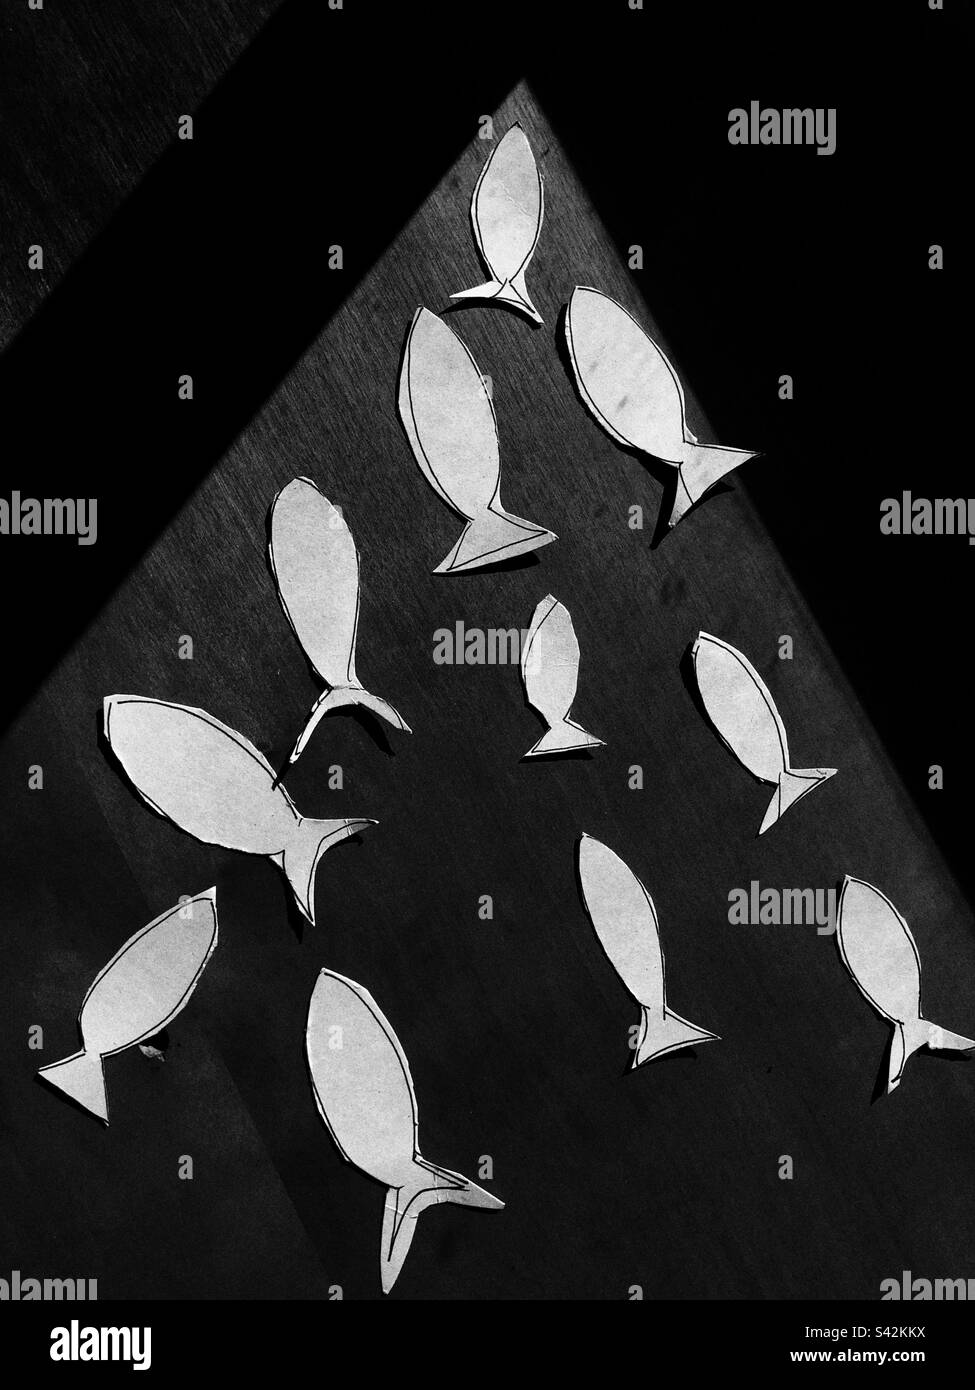 Composition de poisson coupé en papier sur une surface plane Banque D'Images